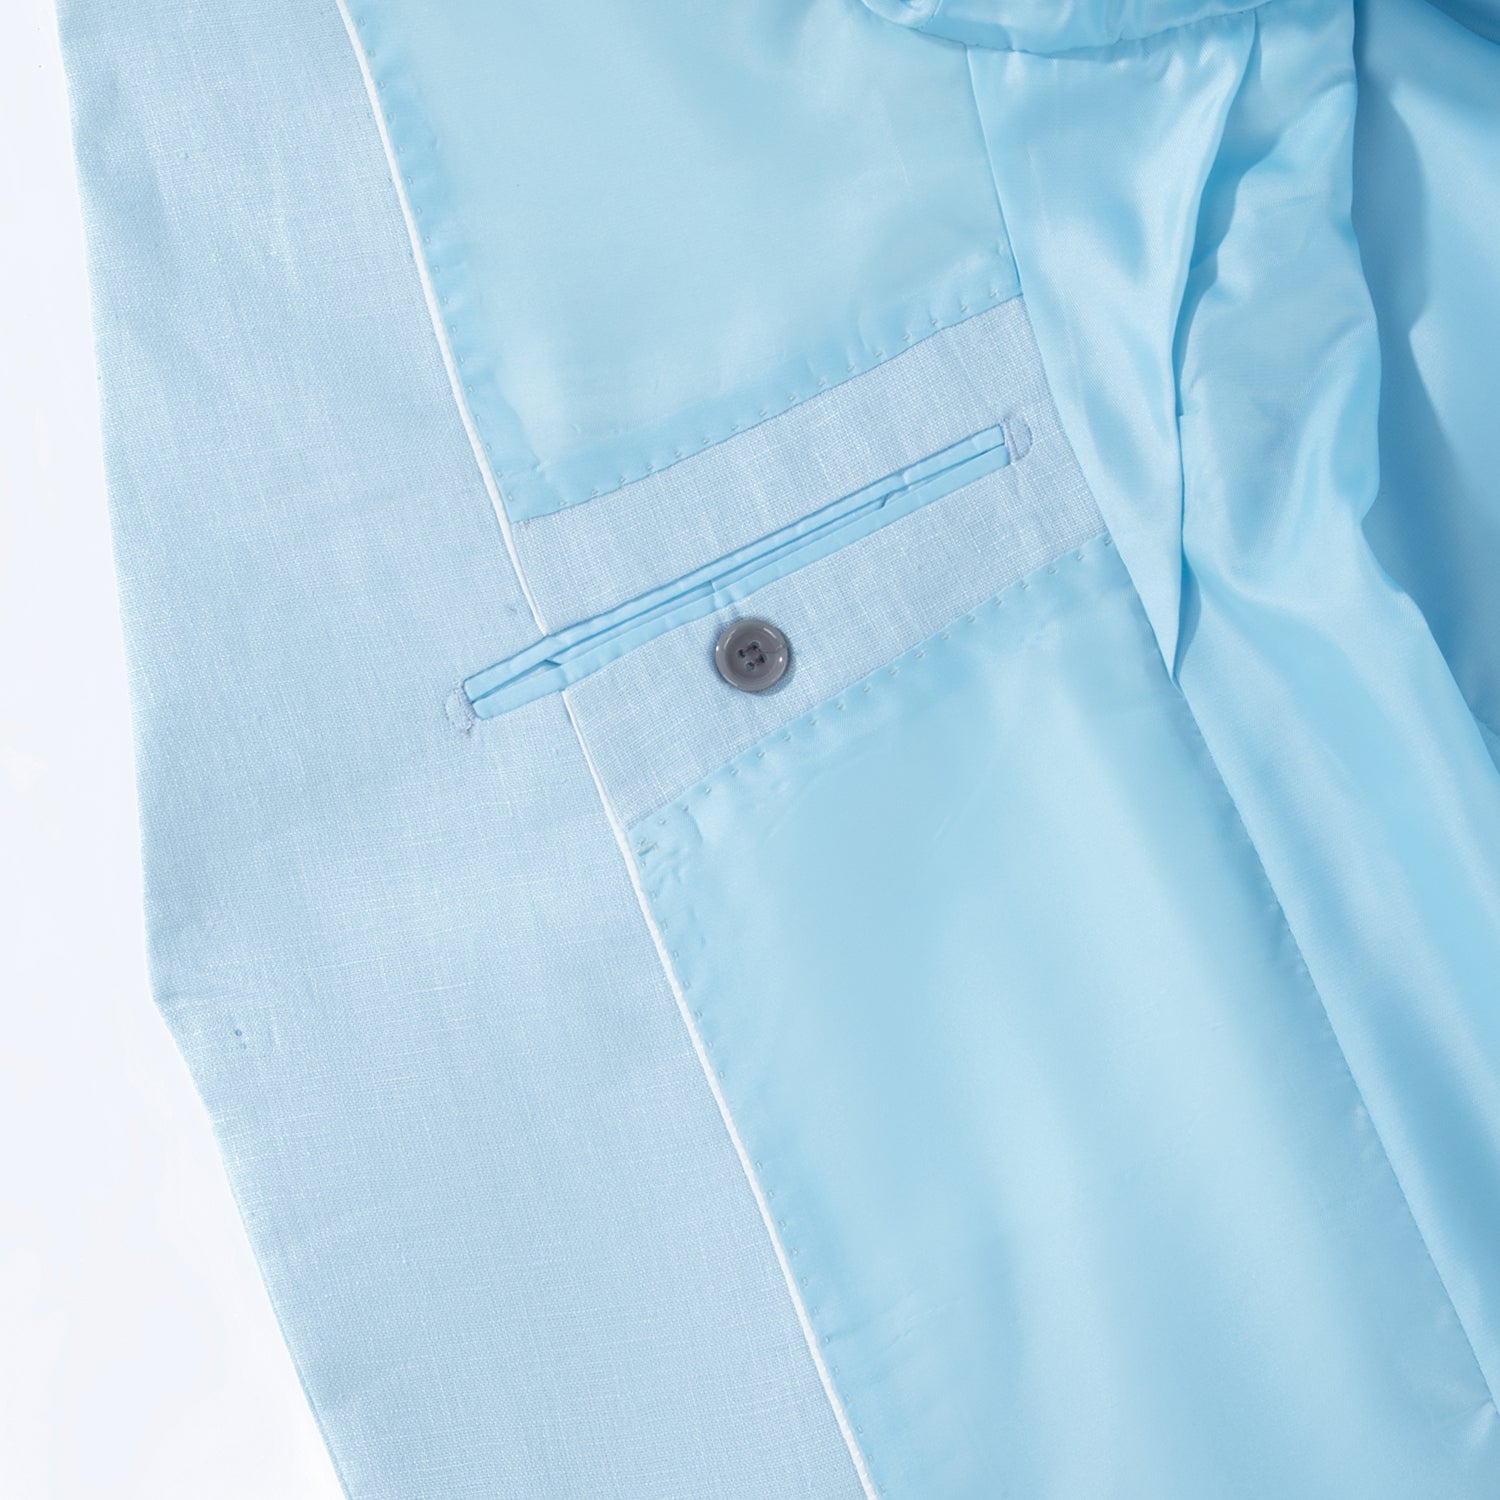 1PA1 Men's 100% Linen Light Blue Jacket Trousers 2-Pieces Suit Set